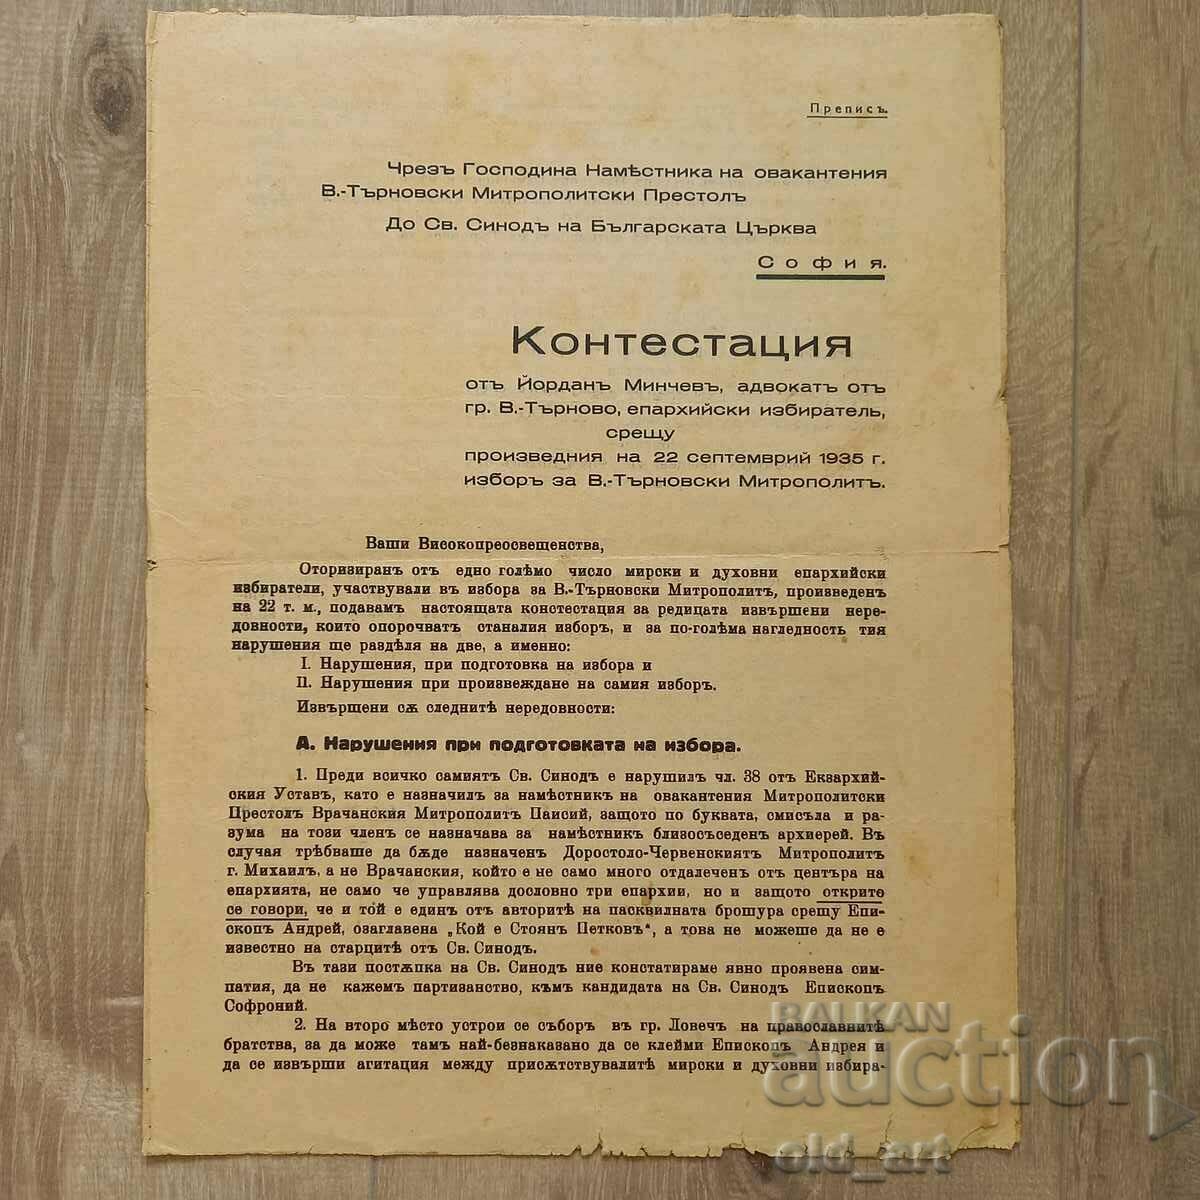 Contestation regarding the election of V. Tarnovsky Metropolitan, 1935